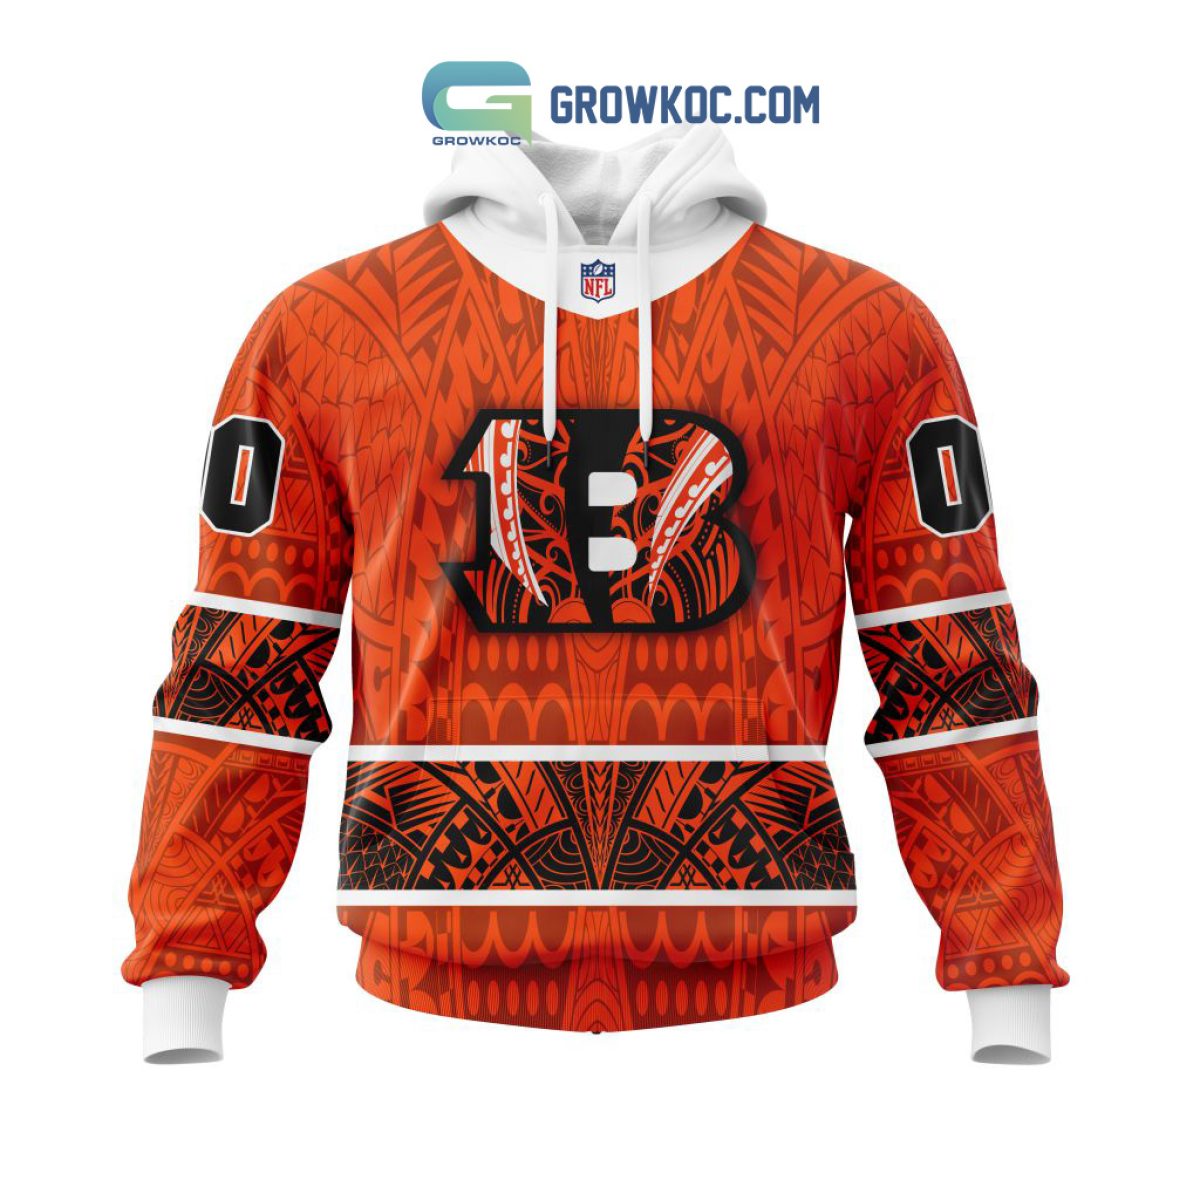 Edmonton Oilers Hohoho Mickey Christmas Ugly Sweater